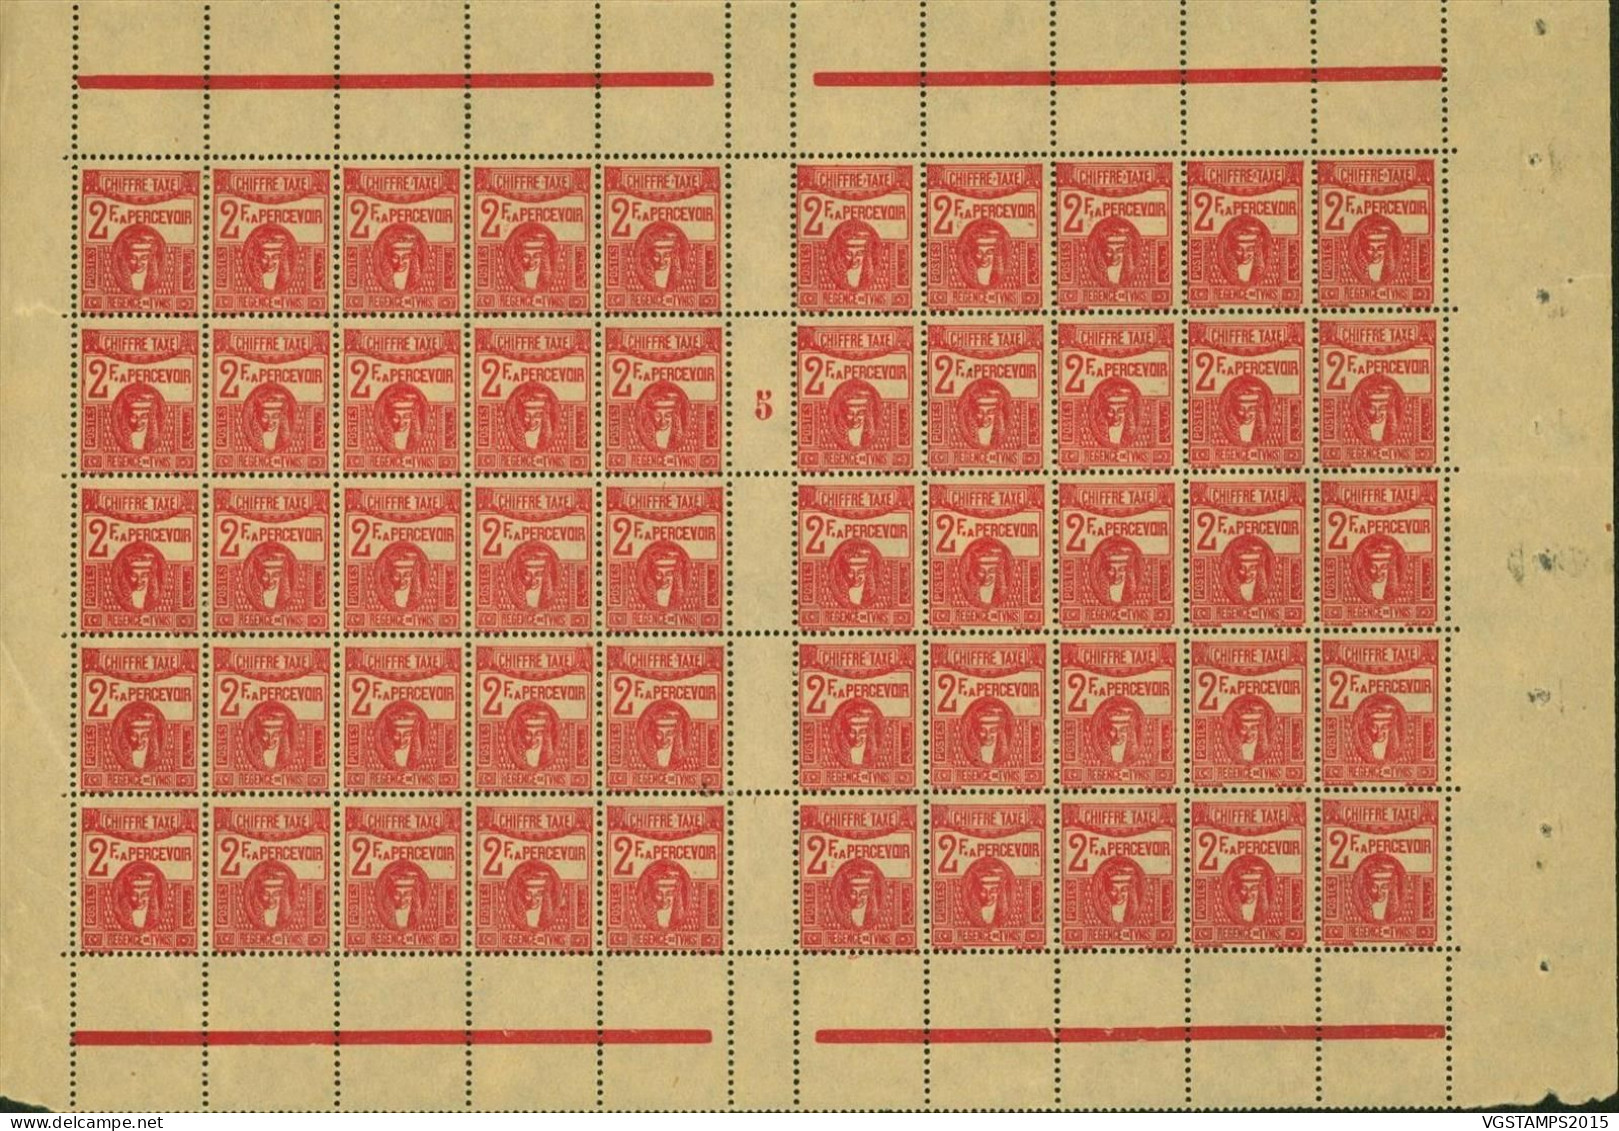 Tunisie 1945 - Colonie Française - Timbres Neufs.Yvert Taxe Nr.:61. Paneau De 50 Avec Millesime "5"......(EB) AR-02373 - Unused Stamps